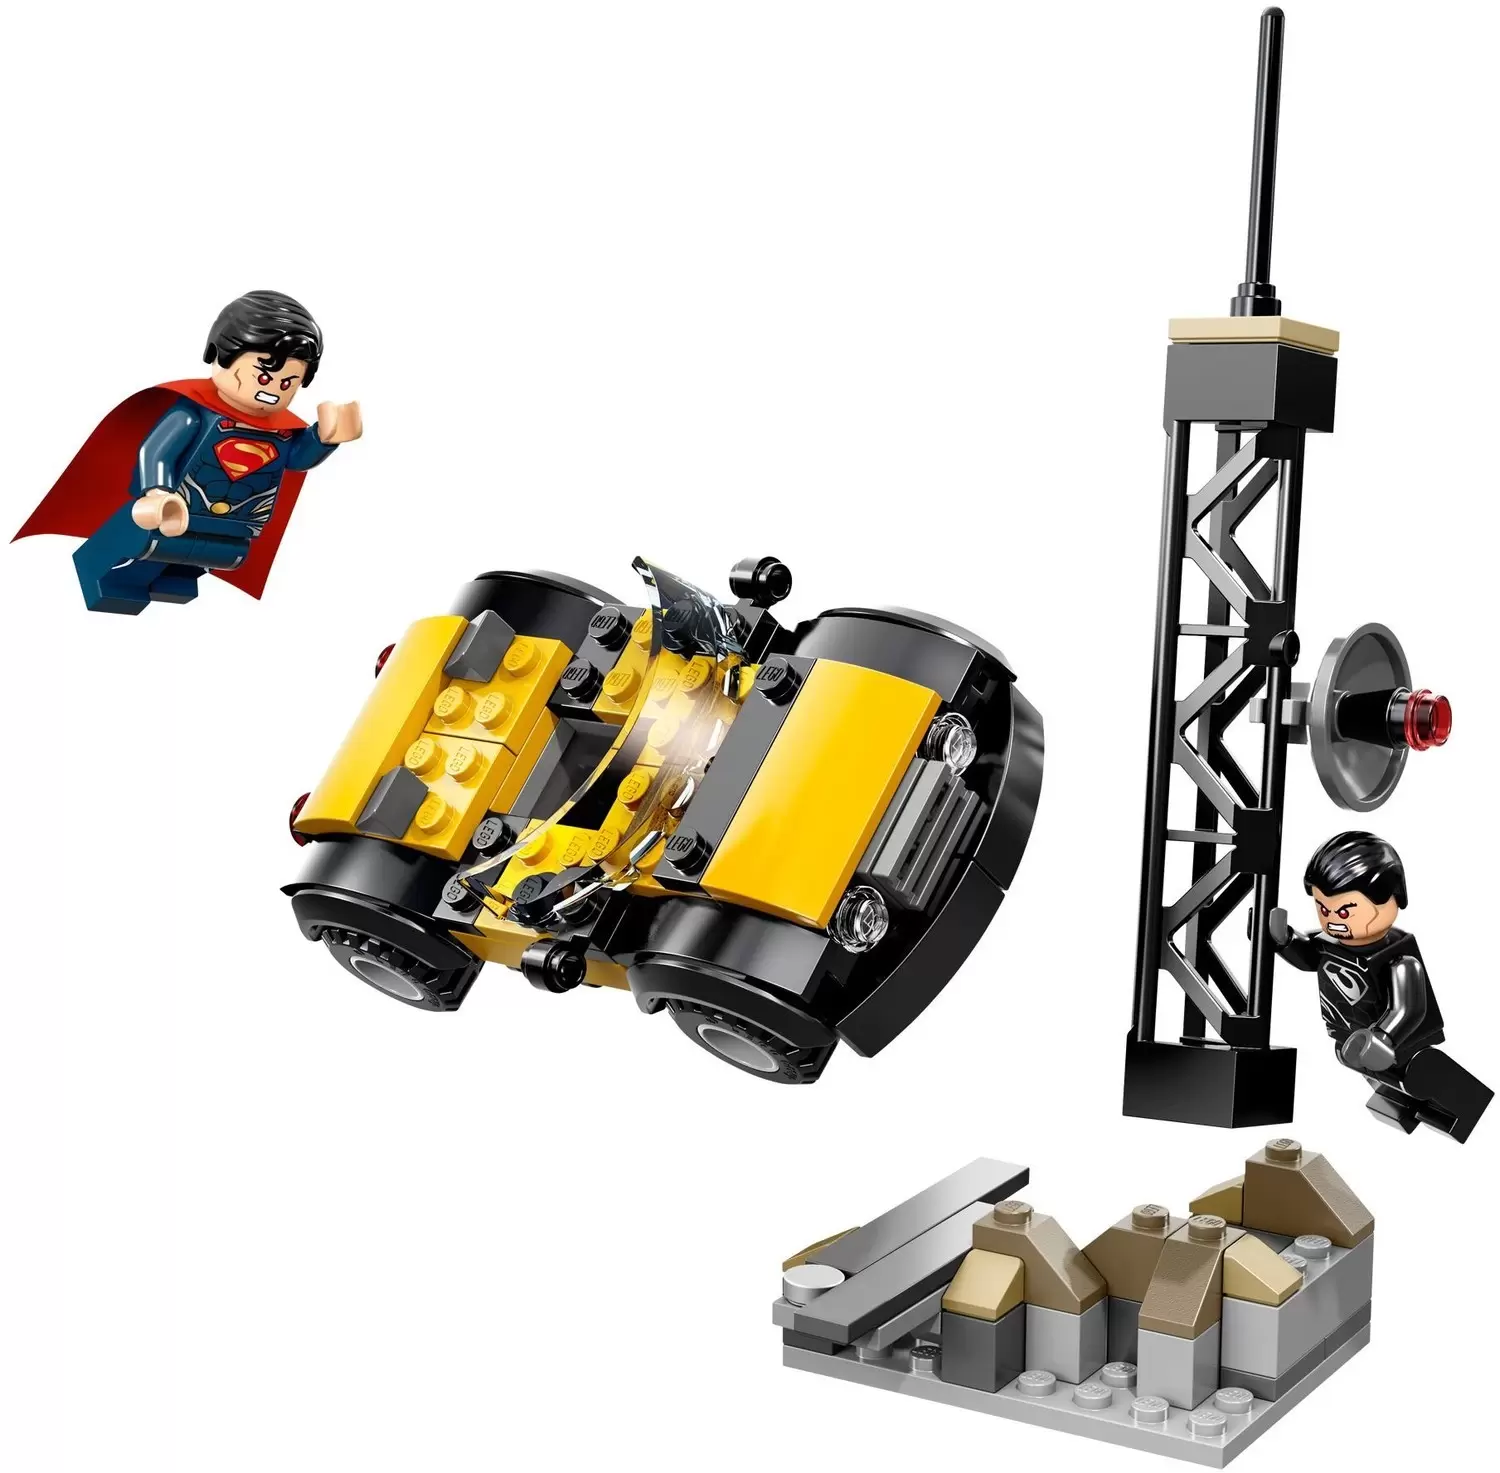 LEGO DC Comics Super Heroes - Superman Metropolis Showdown